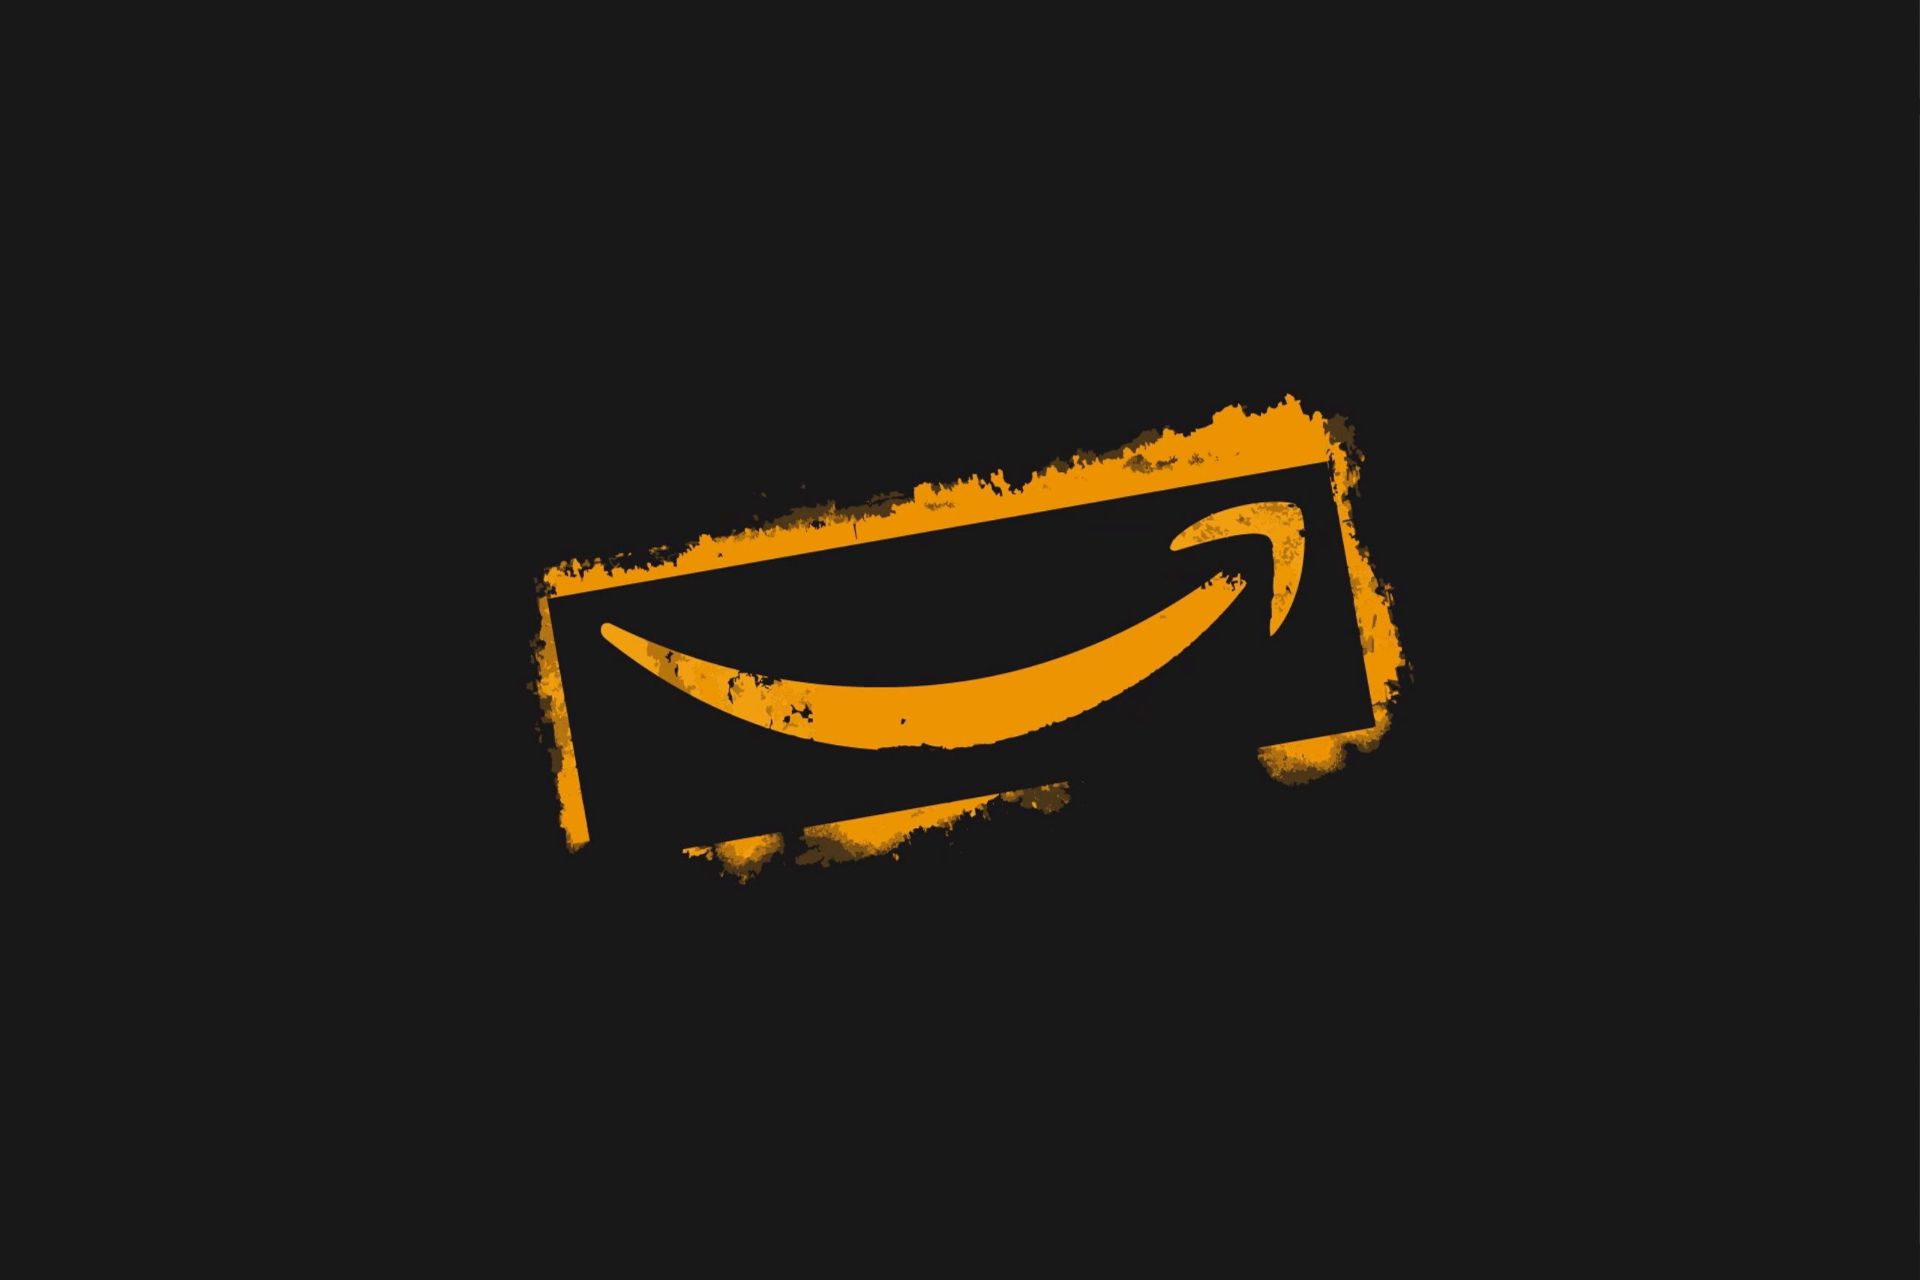 لوگو آمازون / Amazon طرح گرافیکی طلایی